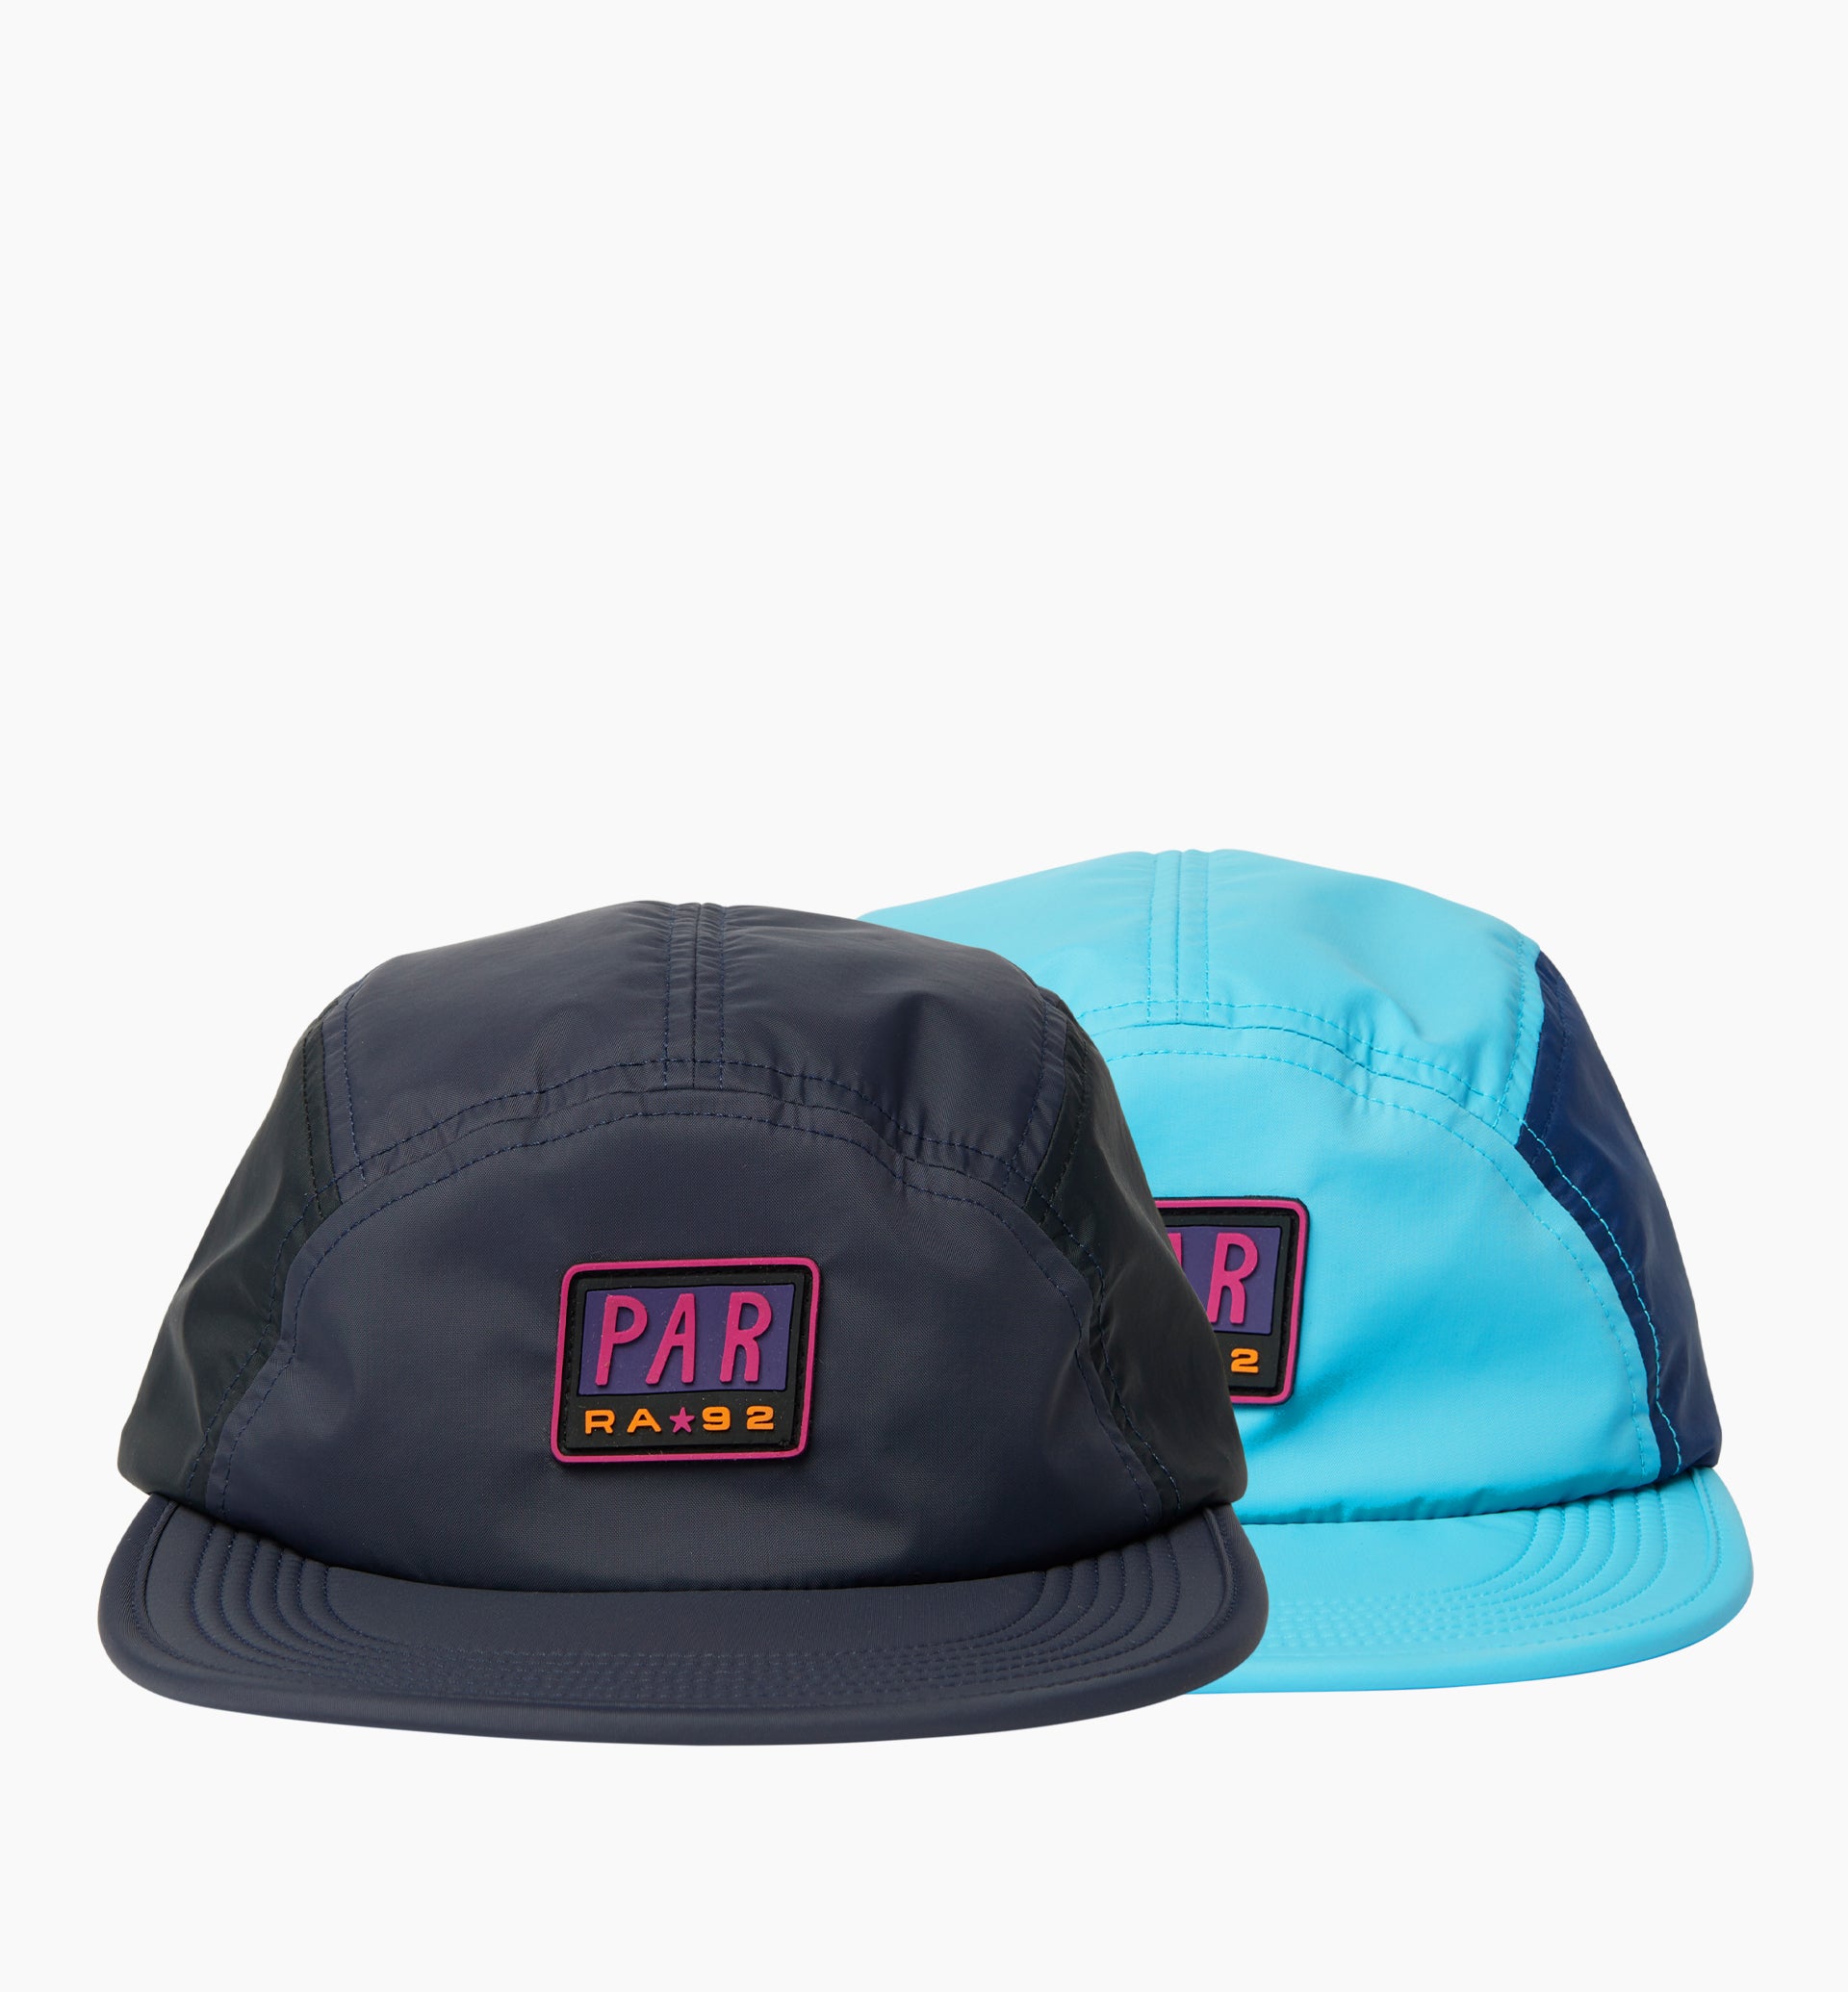 Parra - 1992 logo 5 panel hat